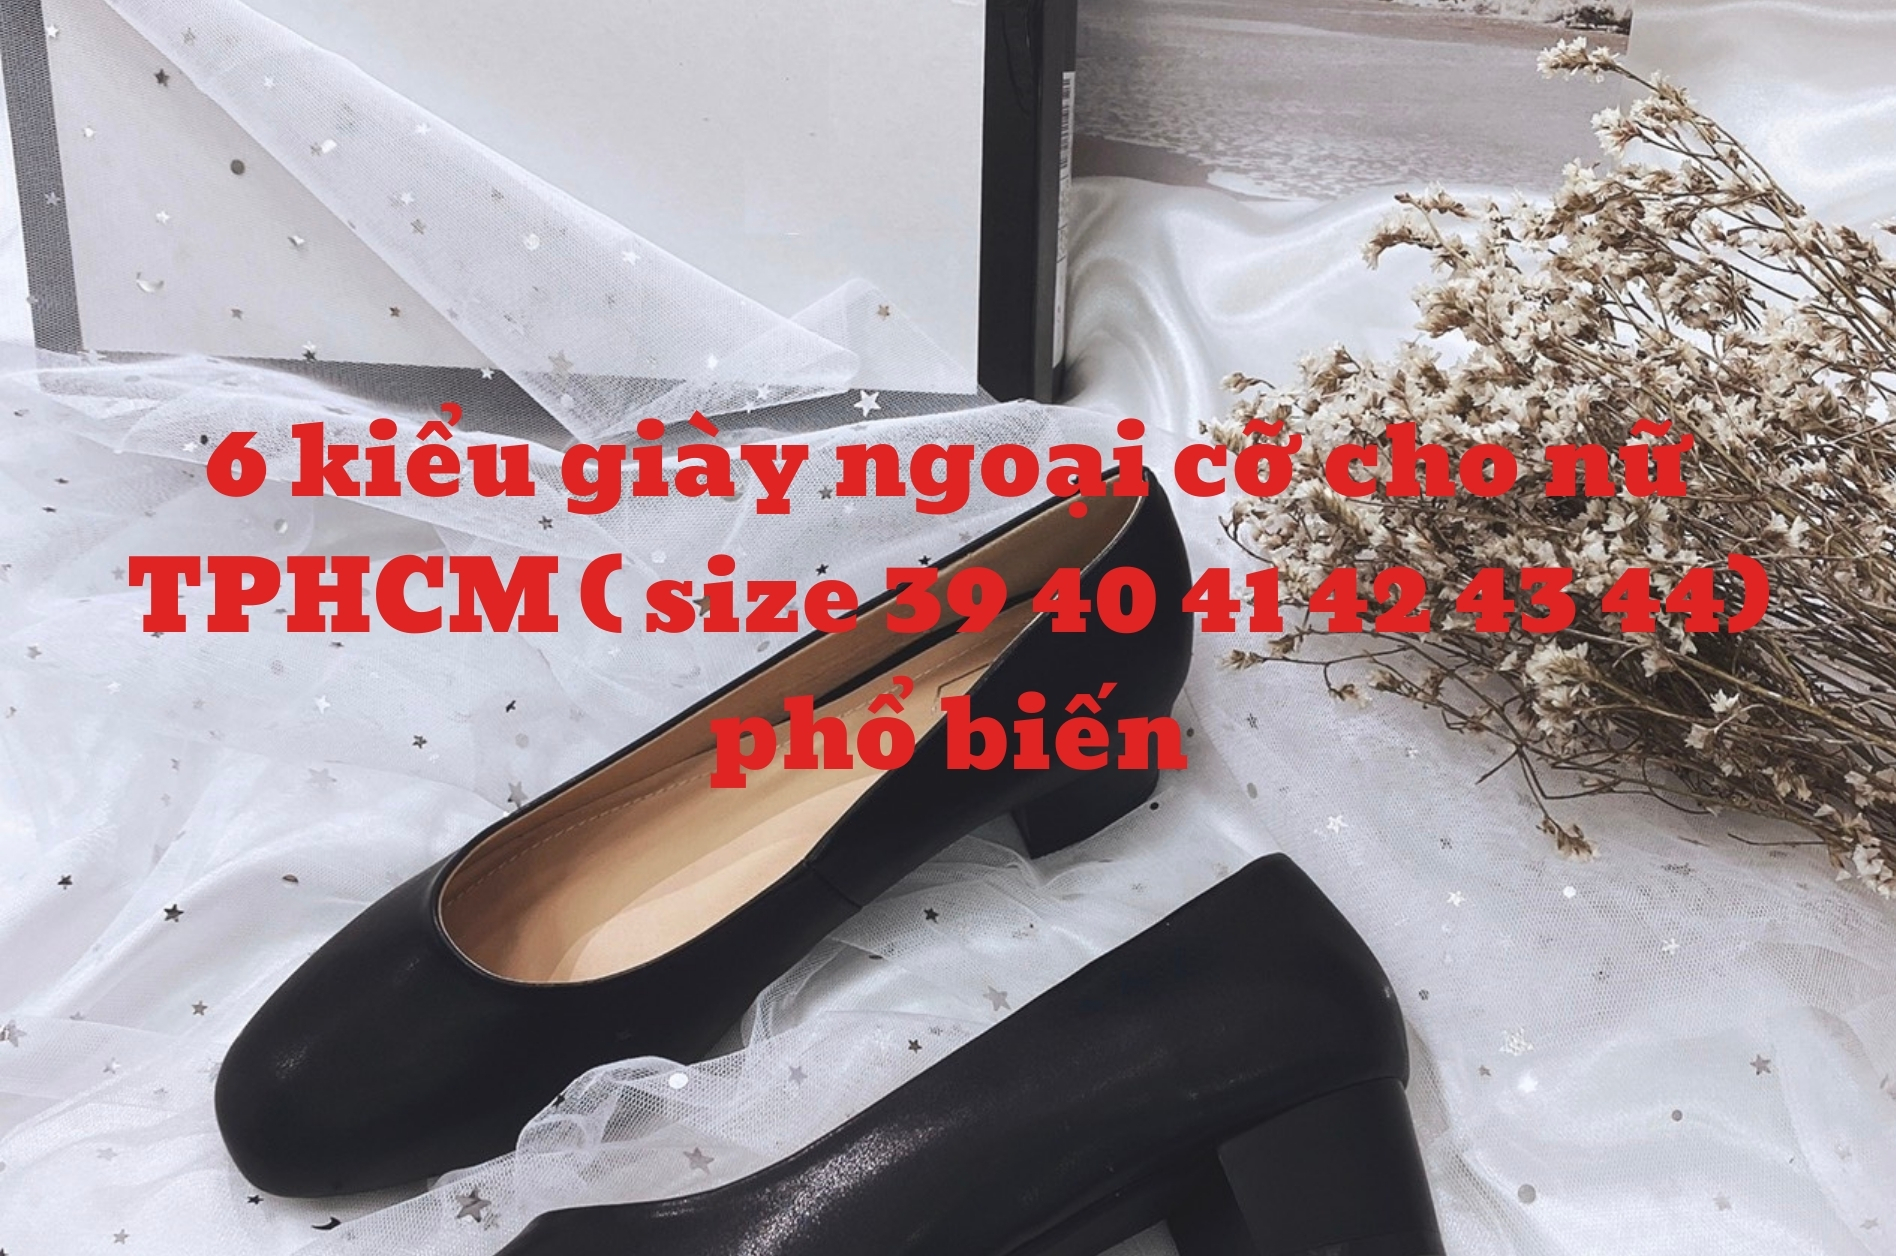 6 kiểu giày ngoại cỡ cho nữ TPHCM ( size 39 40 41 42 43 44) phổ biến